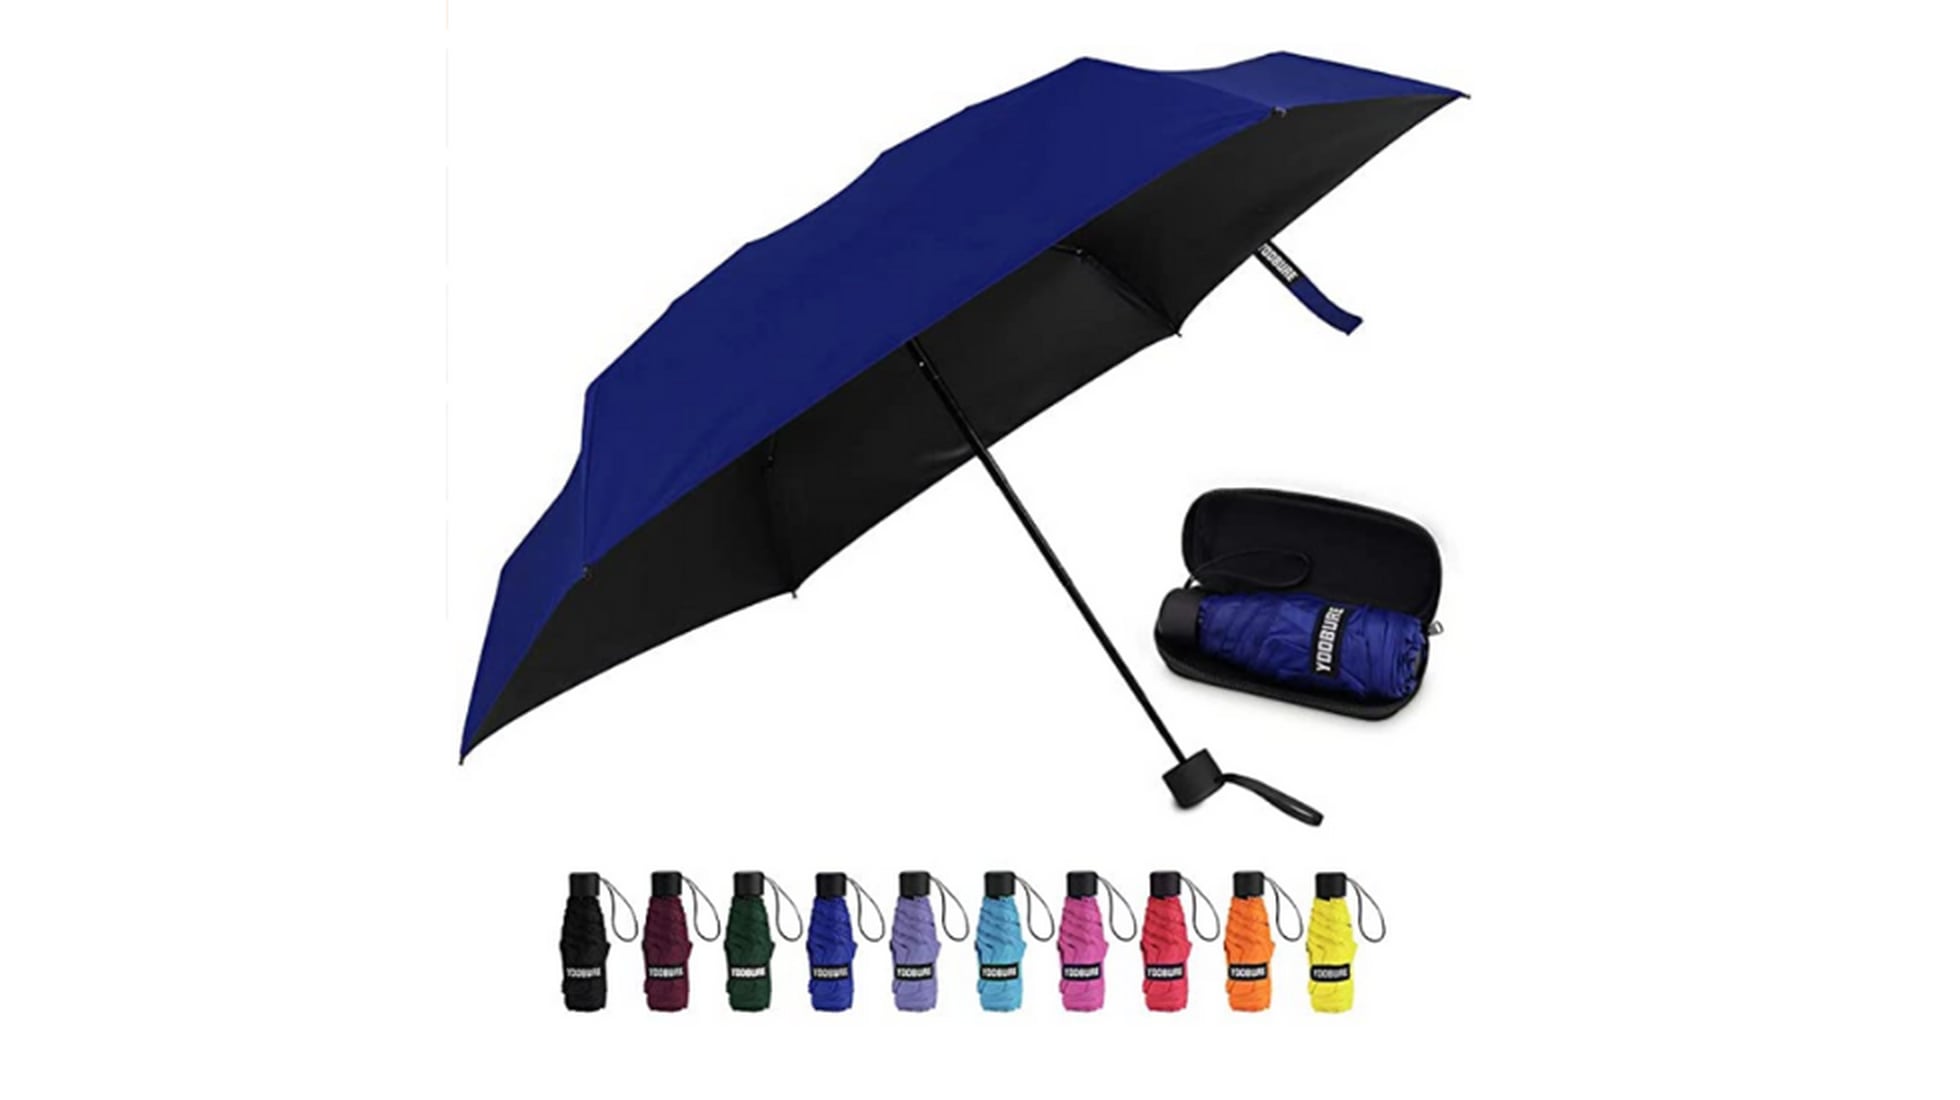 Owfeel bloqueador solar UV paraguas compacto y ligero con bloque protección ultravioleta 